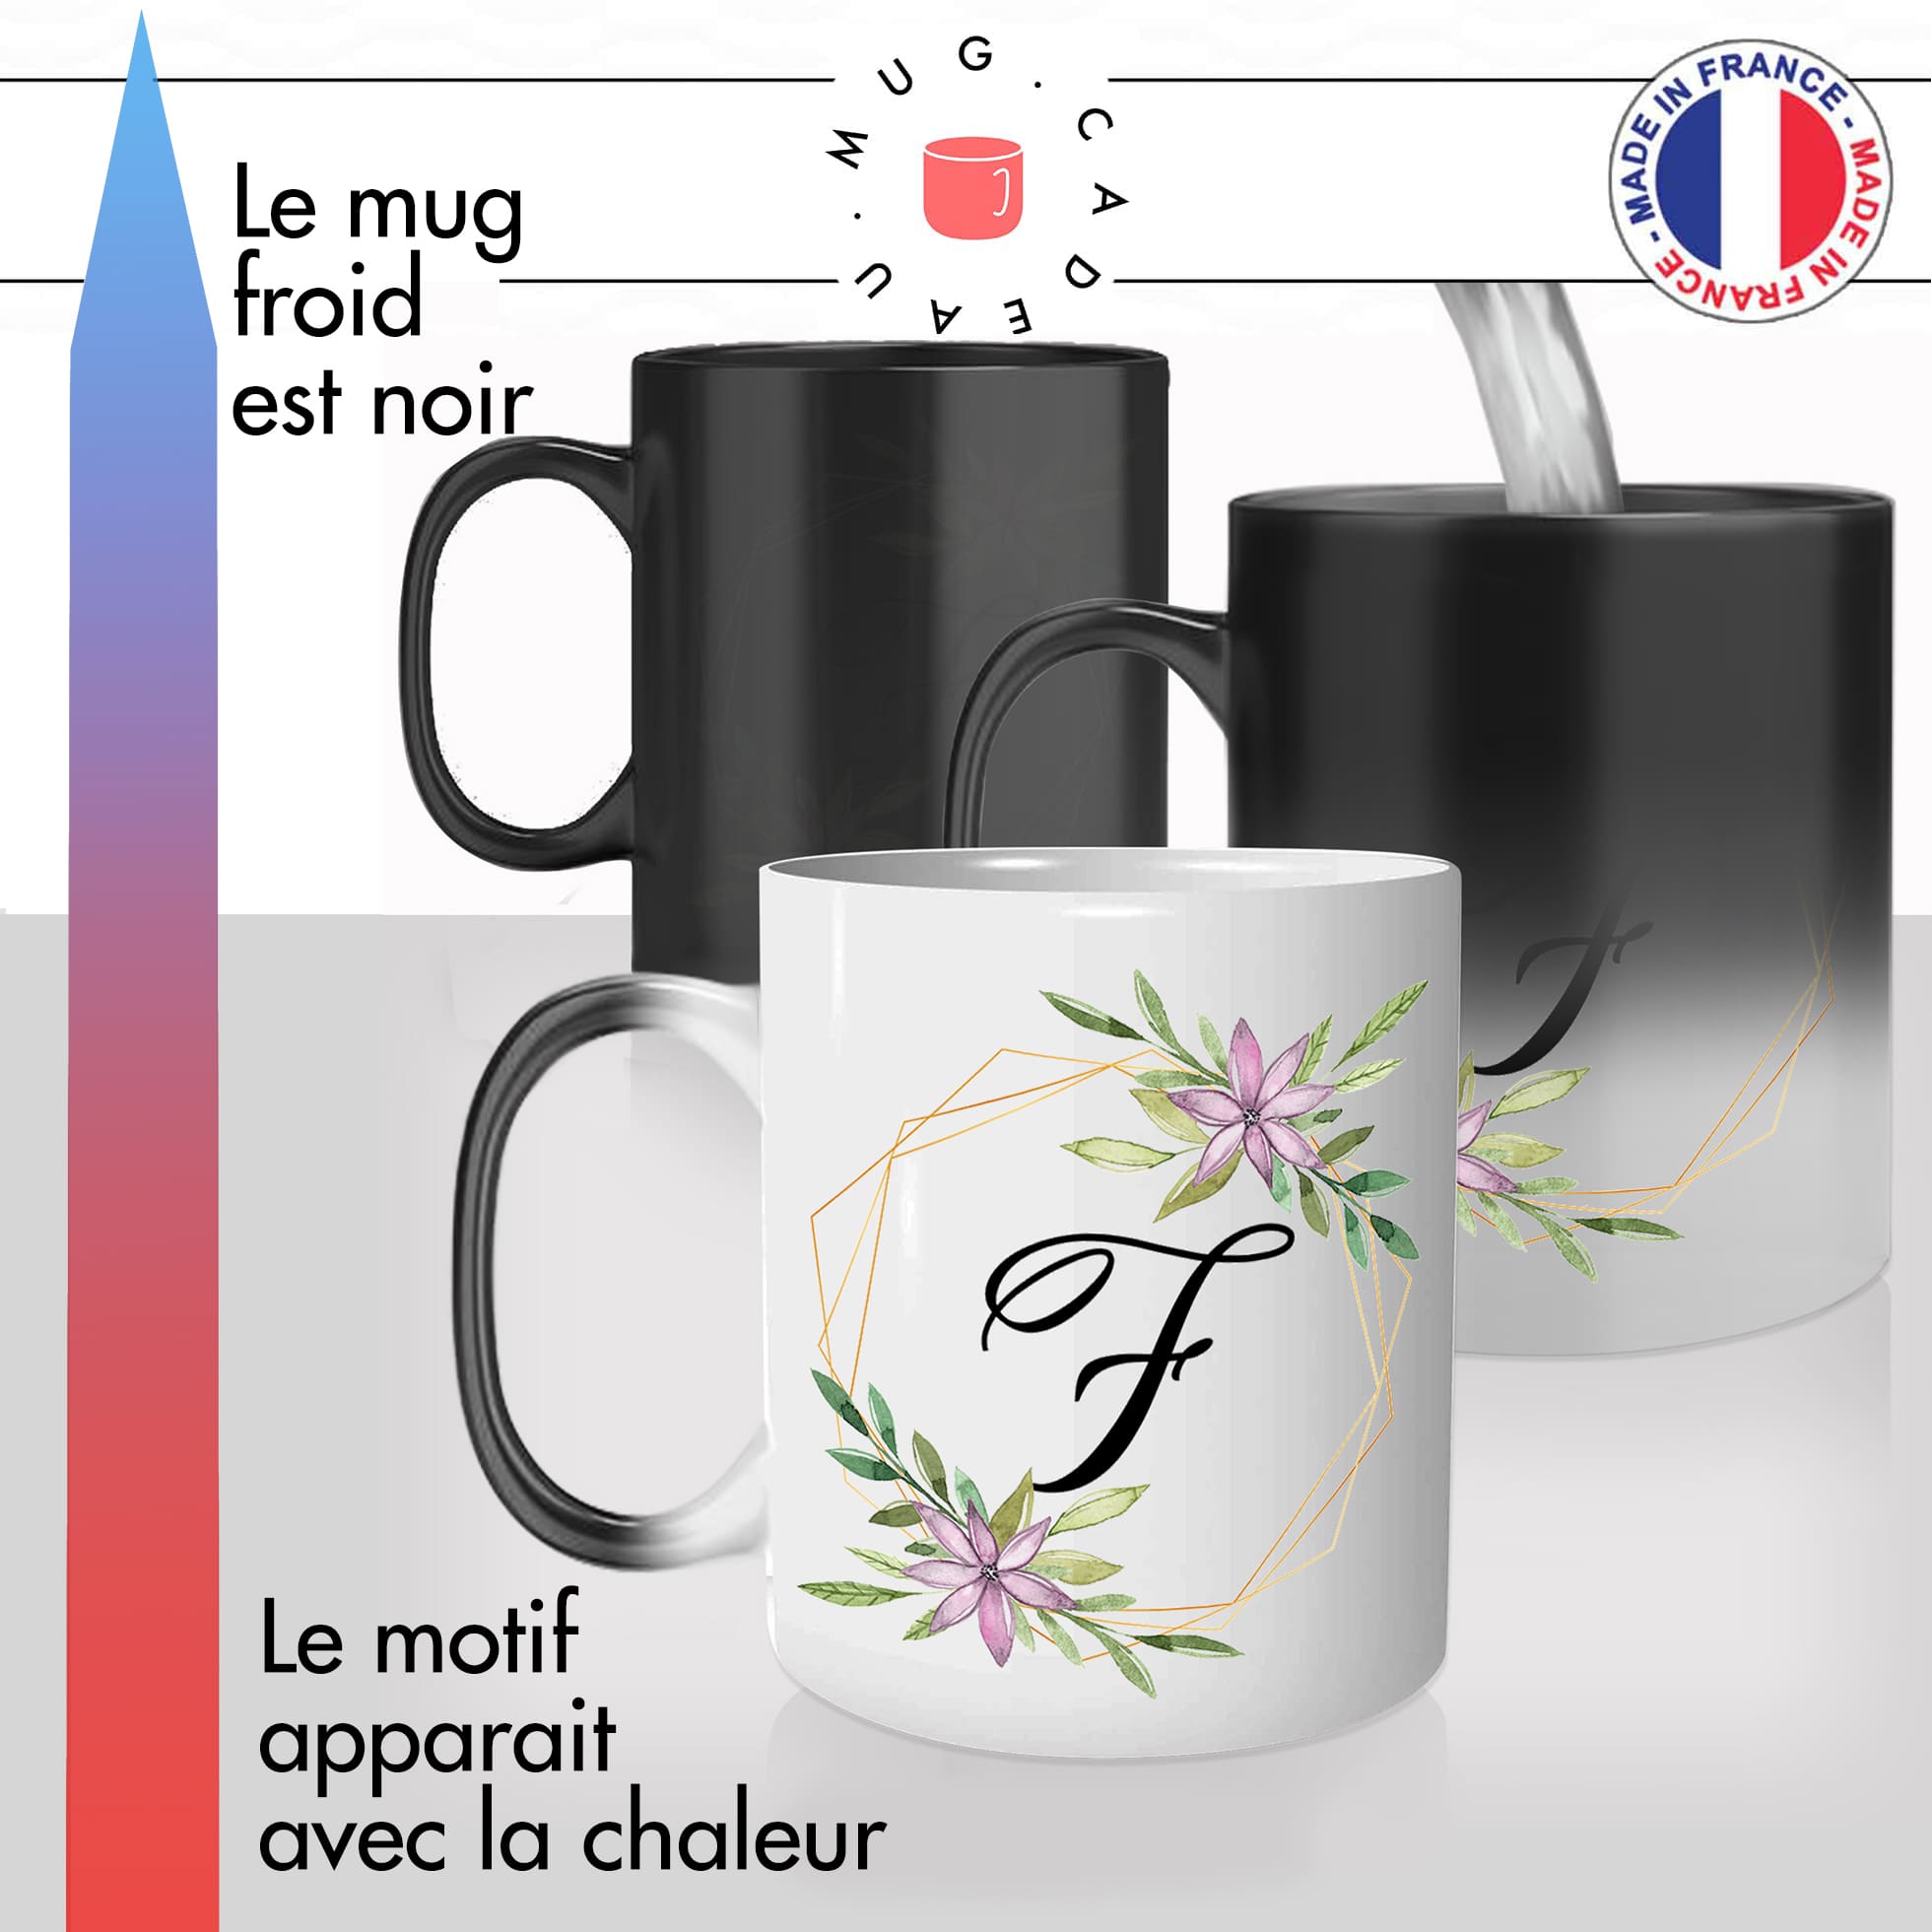 mug magique thermoréactif thermo chauffant personnalisé initiale lettre F fleurs mignon prenom idée cadeau original fun